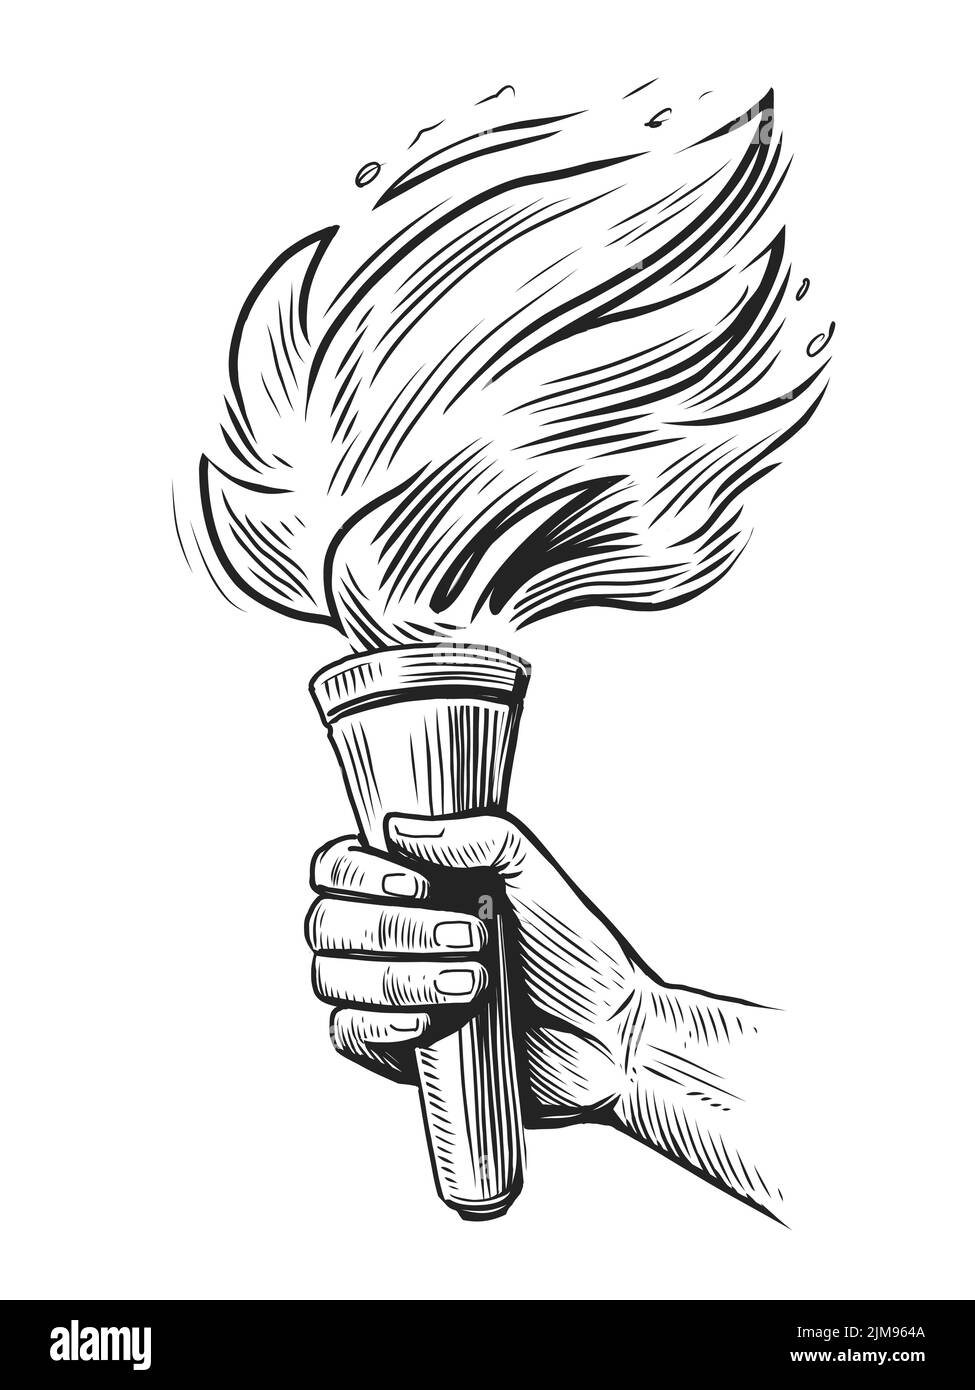 Fackel mit flammendem Feuer in Handskizze. Leuchtende Fackel auf erhobener Hand isoliert. Vektorgrafik im Gravurstil Stock Vektor